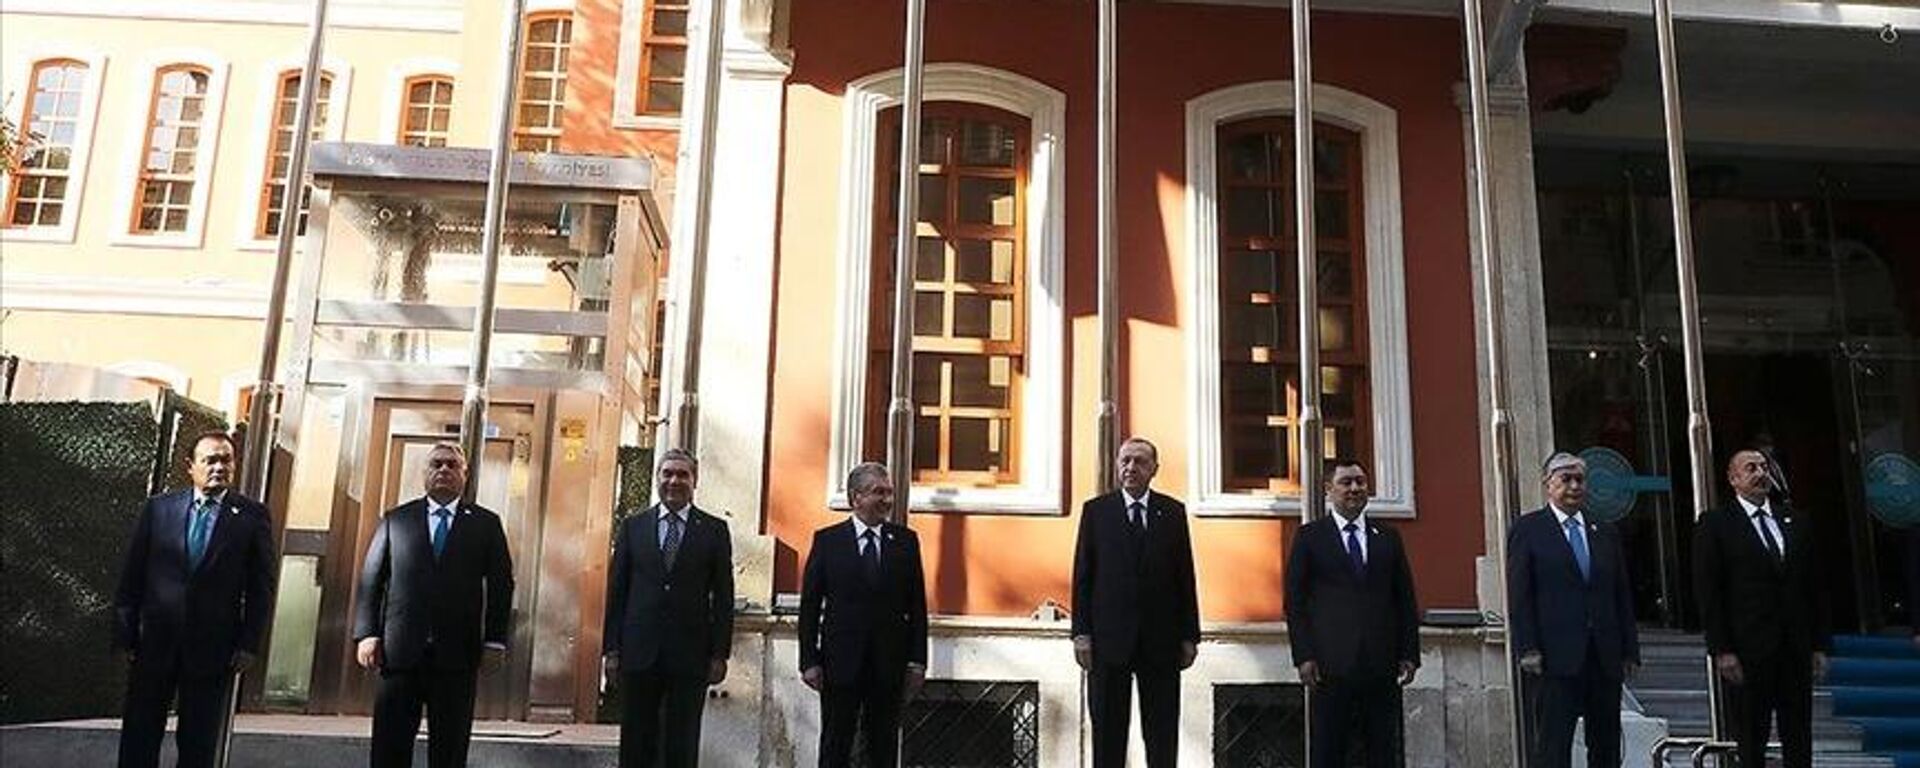 Cumhurbaşkanı Erdoğan, Türk Konseyi Genel Sekreterliği binasının resmi açılışını yaptı - Sputnik Türkiye, 1920, 12.11.2021